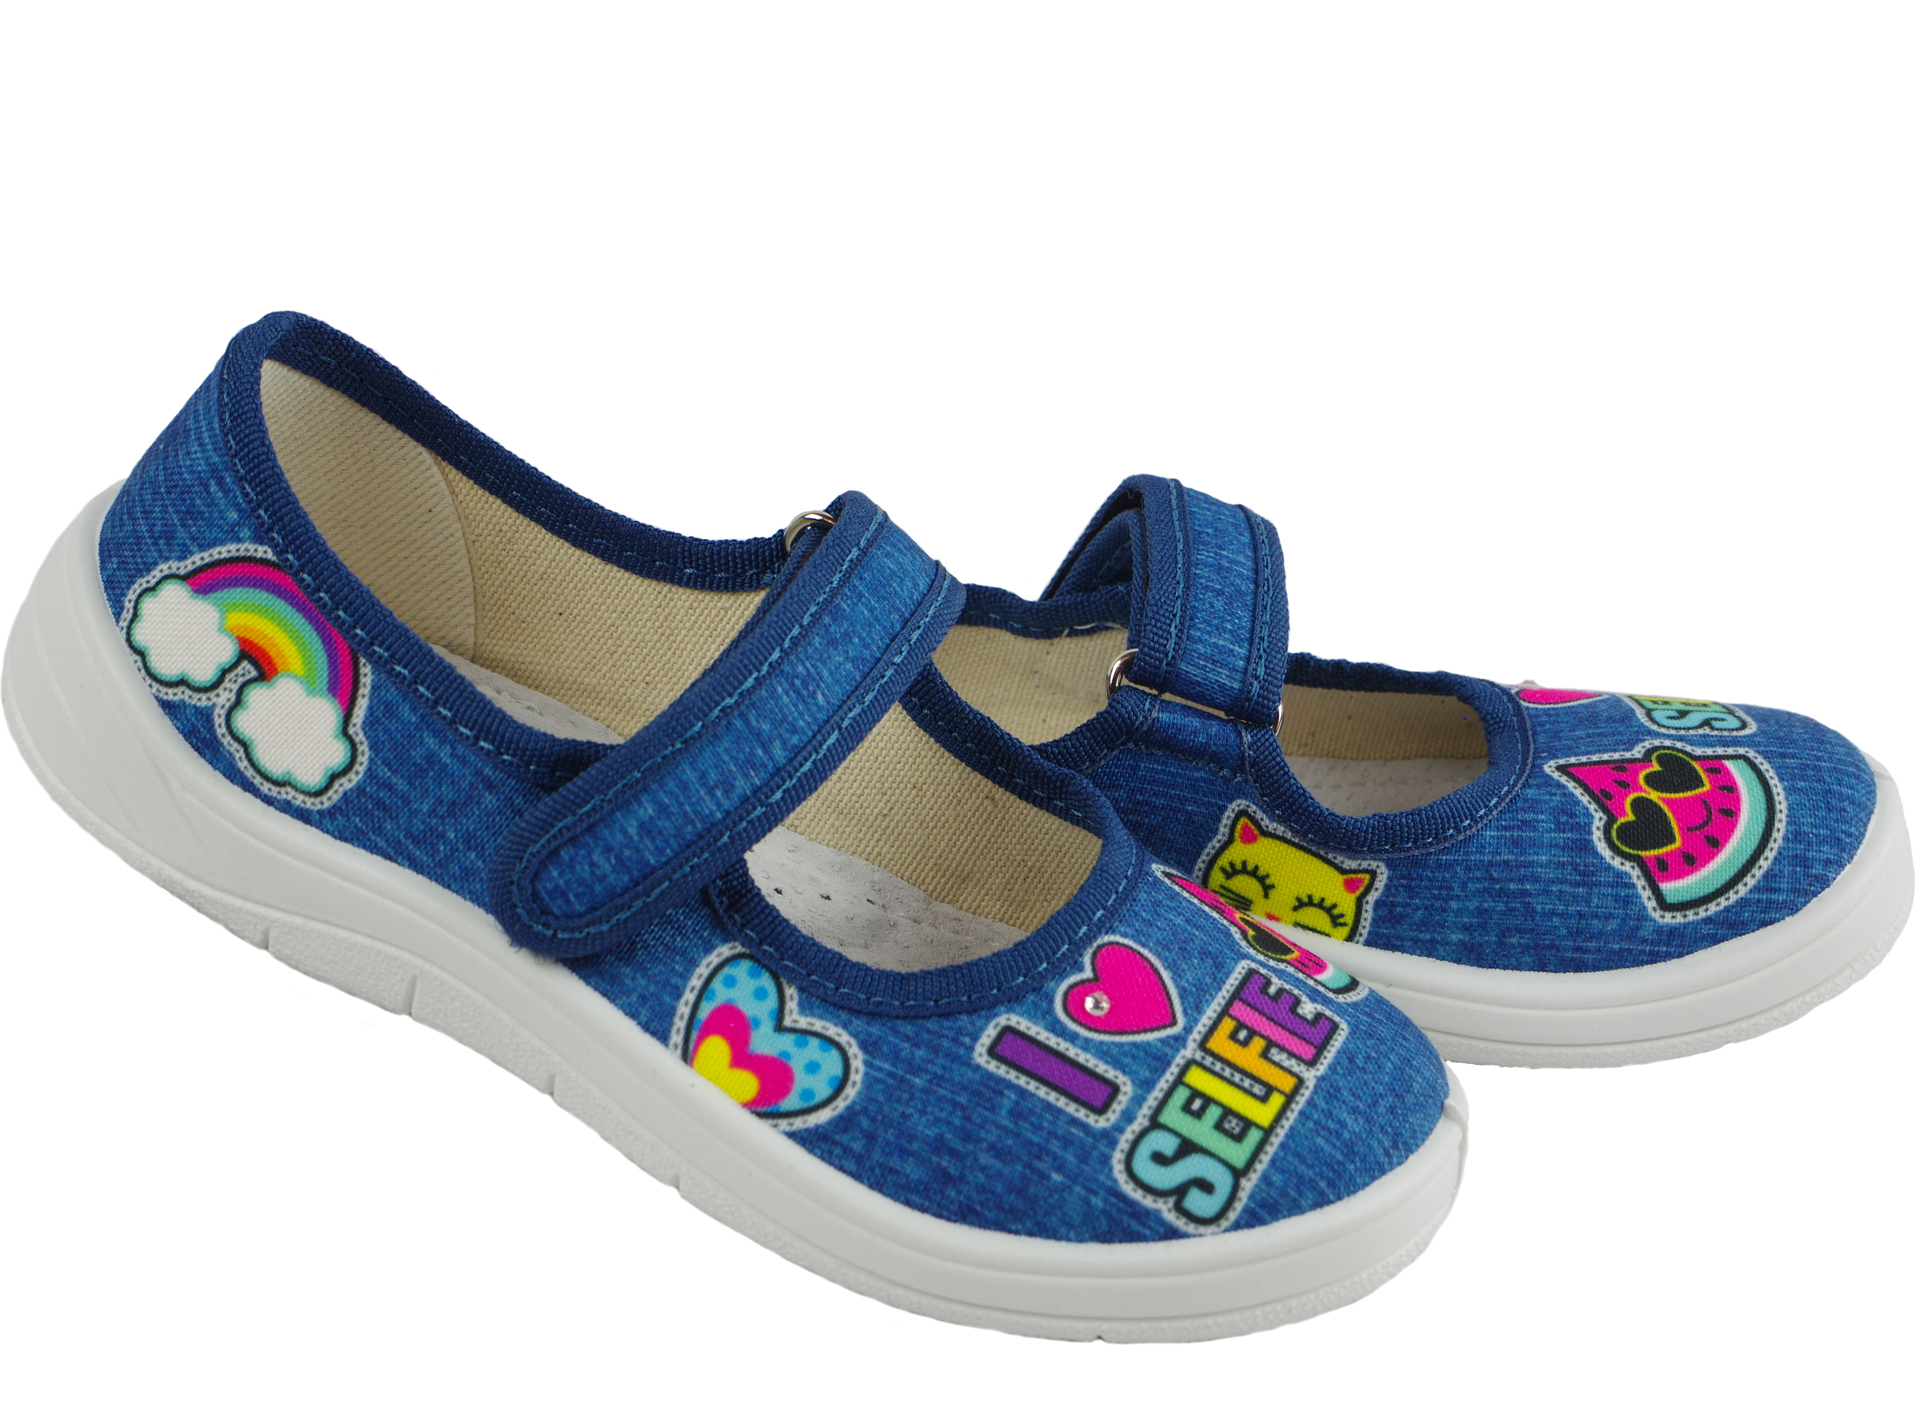 Текстильная обувь для девочек Тапочки Алина (1913) цвет Голубой 24-30 размеры – Sole Kids. Фото 4